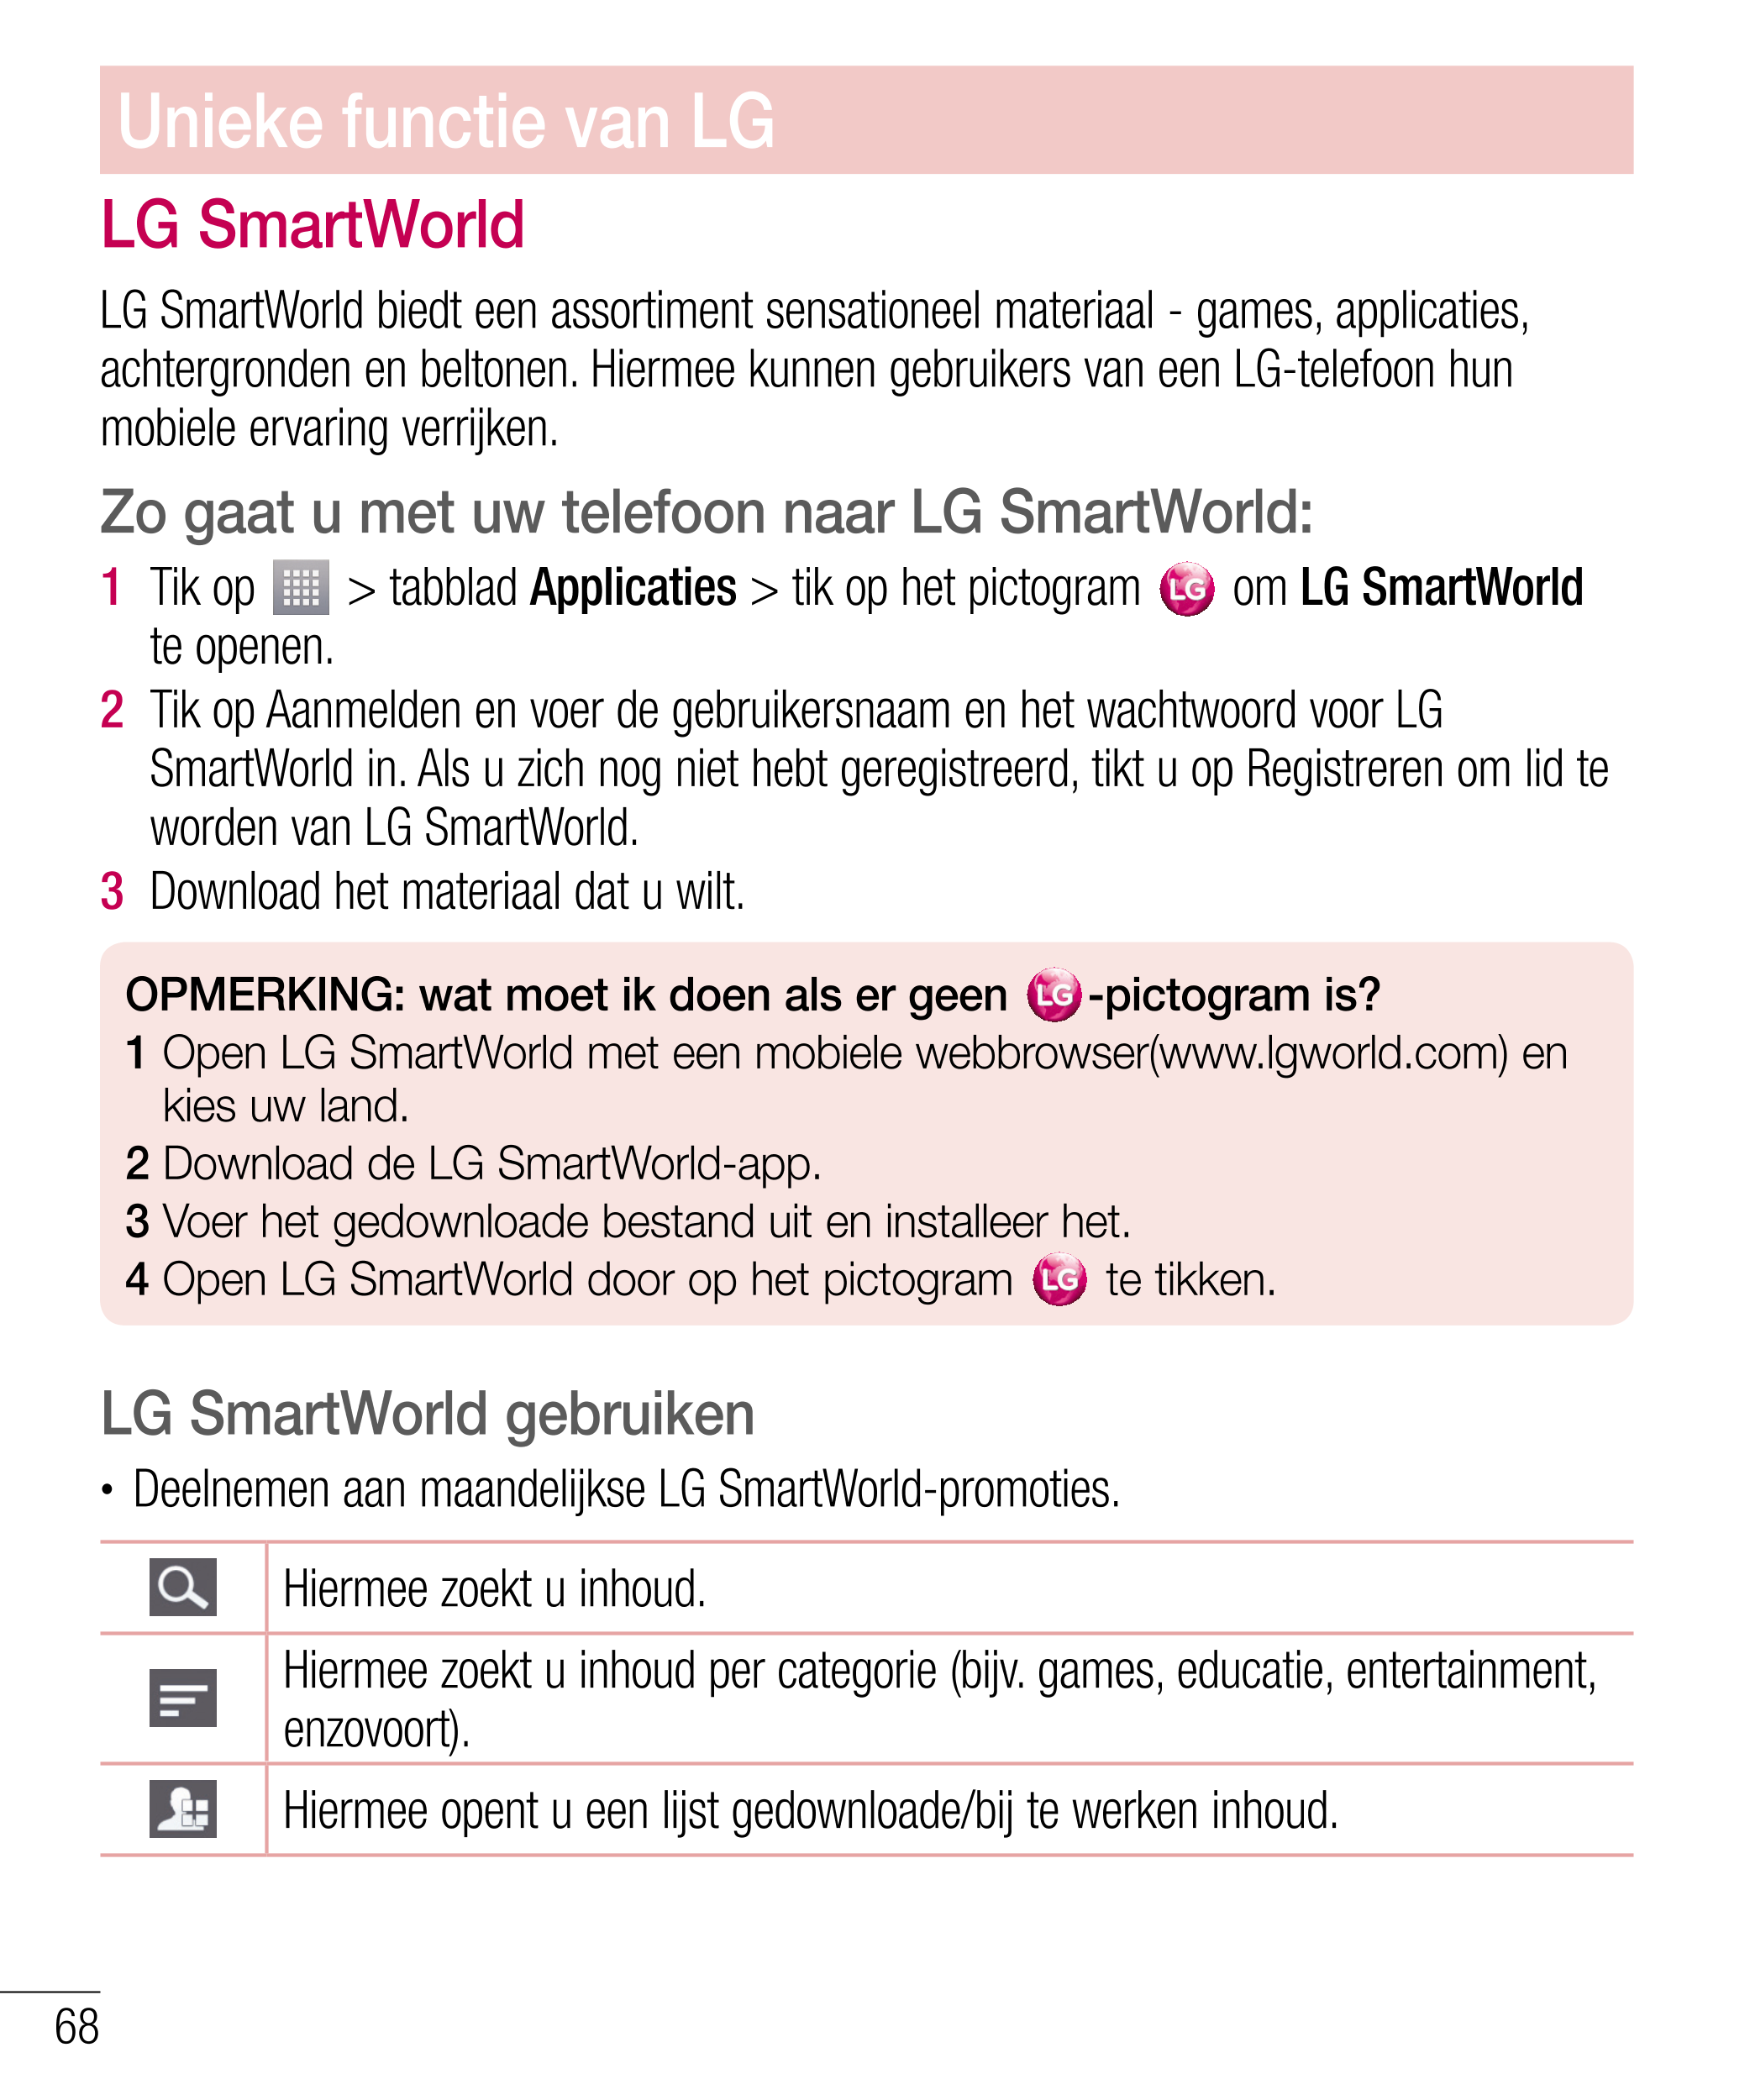 Unieke functie van LG
LG SmartWorld
LG SmartWorld biedt een assortiment sensationeel materiaal - games, applicaties, 
achtergron